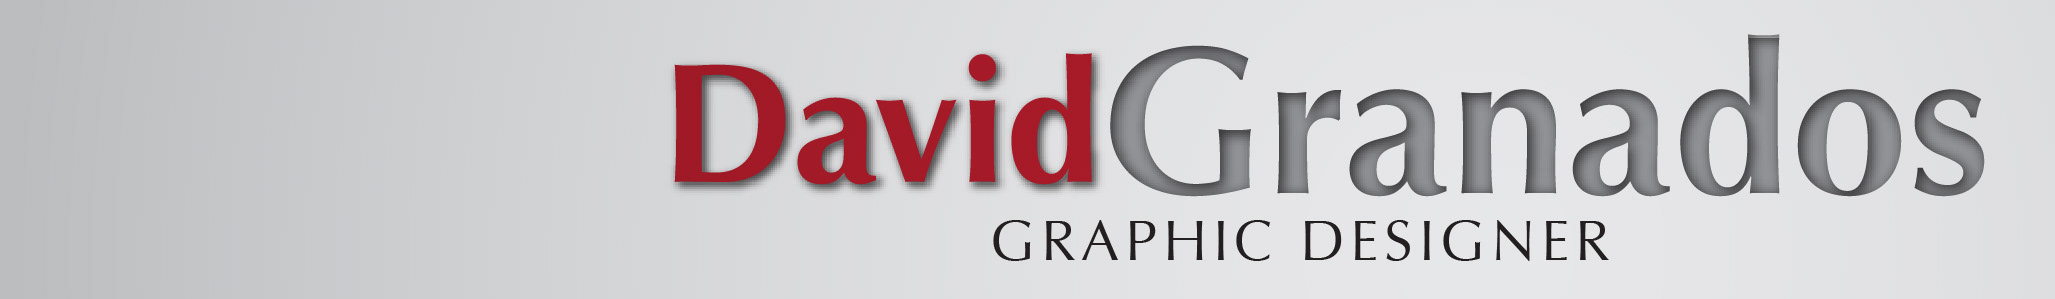 David Granados's profile banner